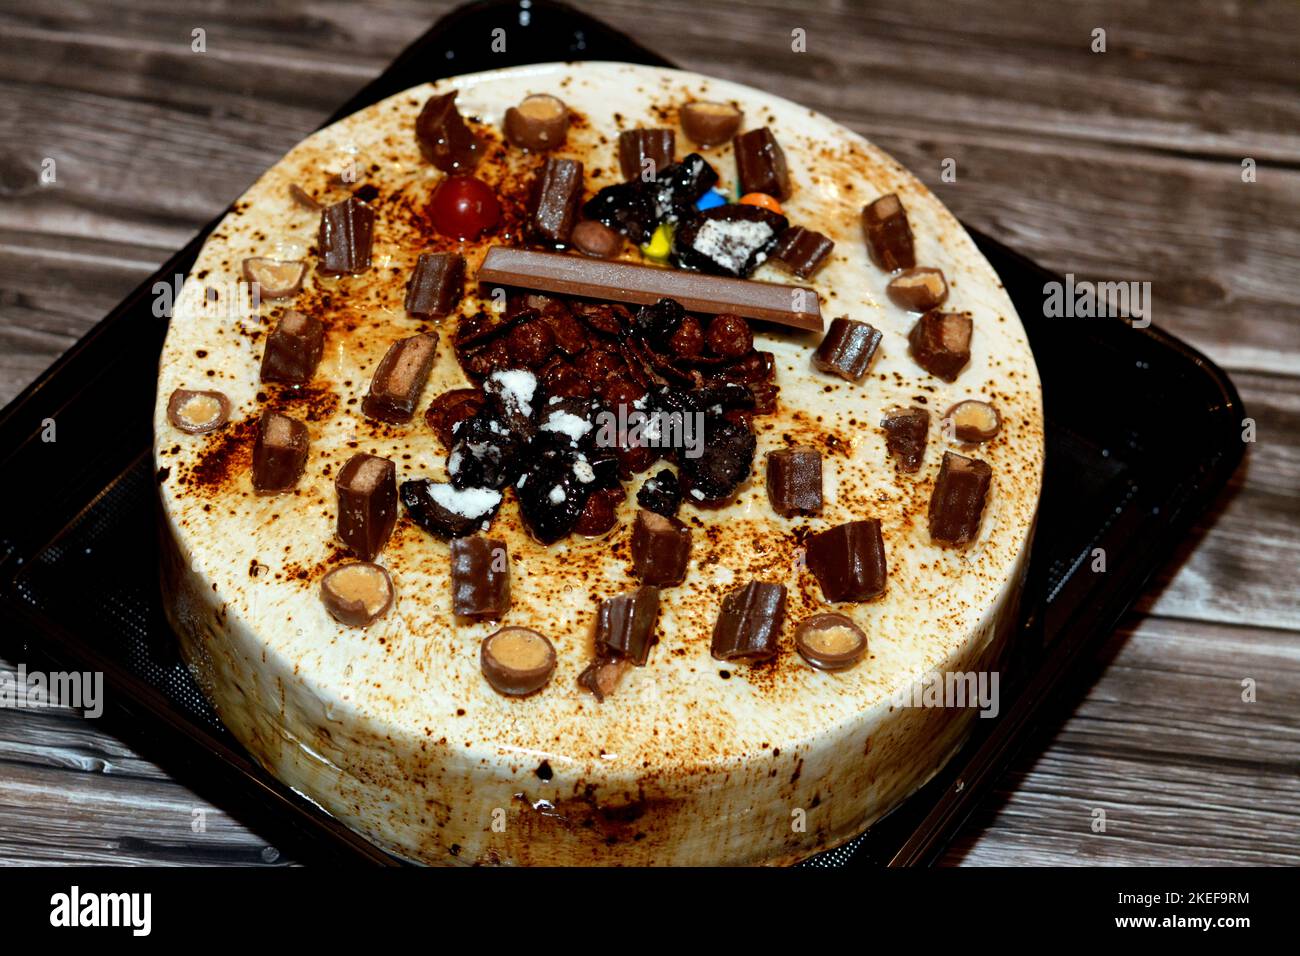 Torta festosa al cioccolato al caramello ricoperta di caramello e panna montata, farcita con crema alla vaniglia e noci, e decorata con diversi tipi di choc Foto Stock